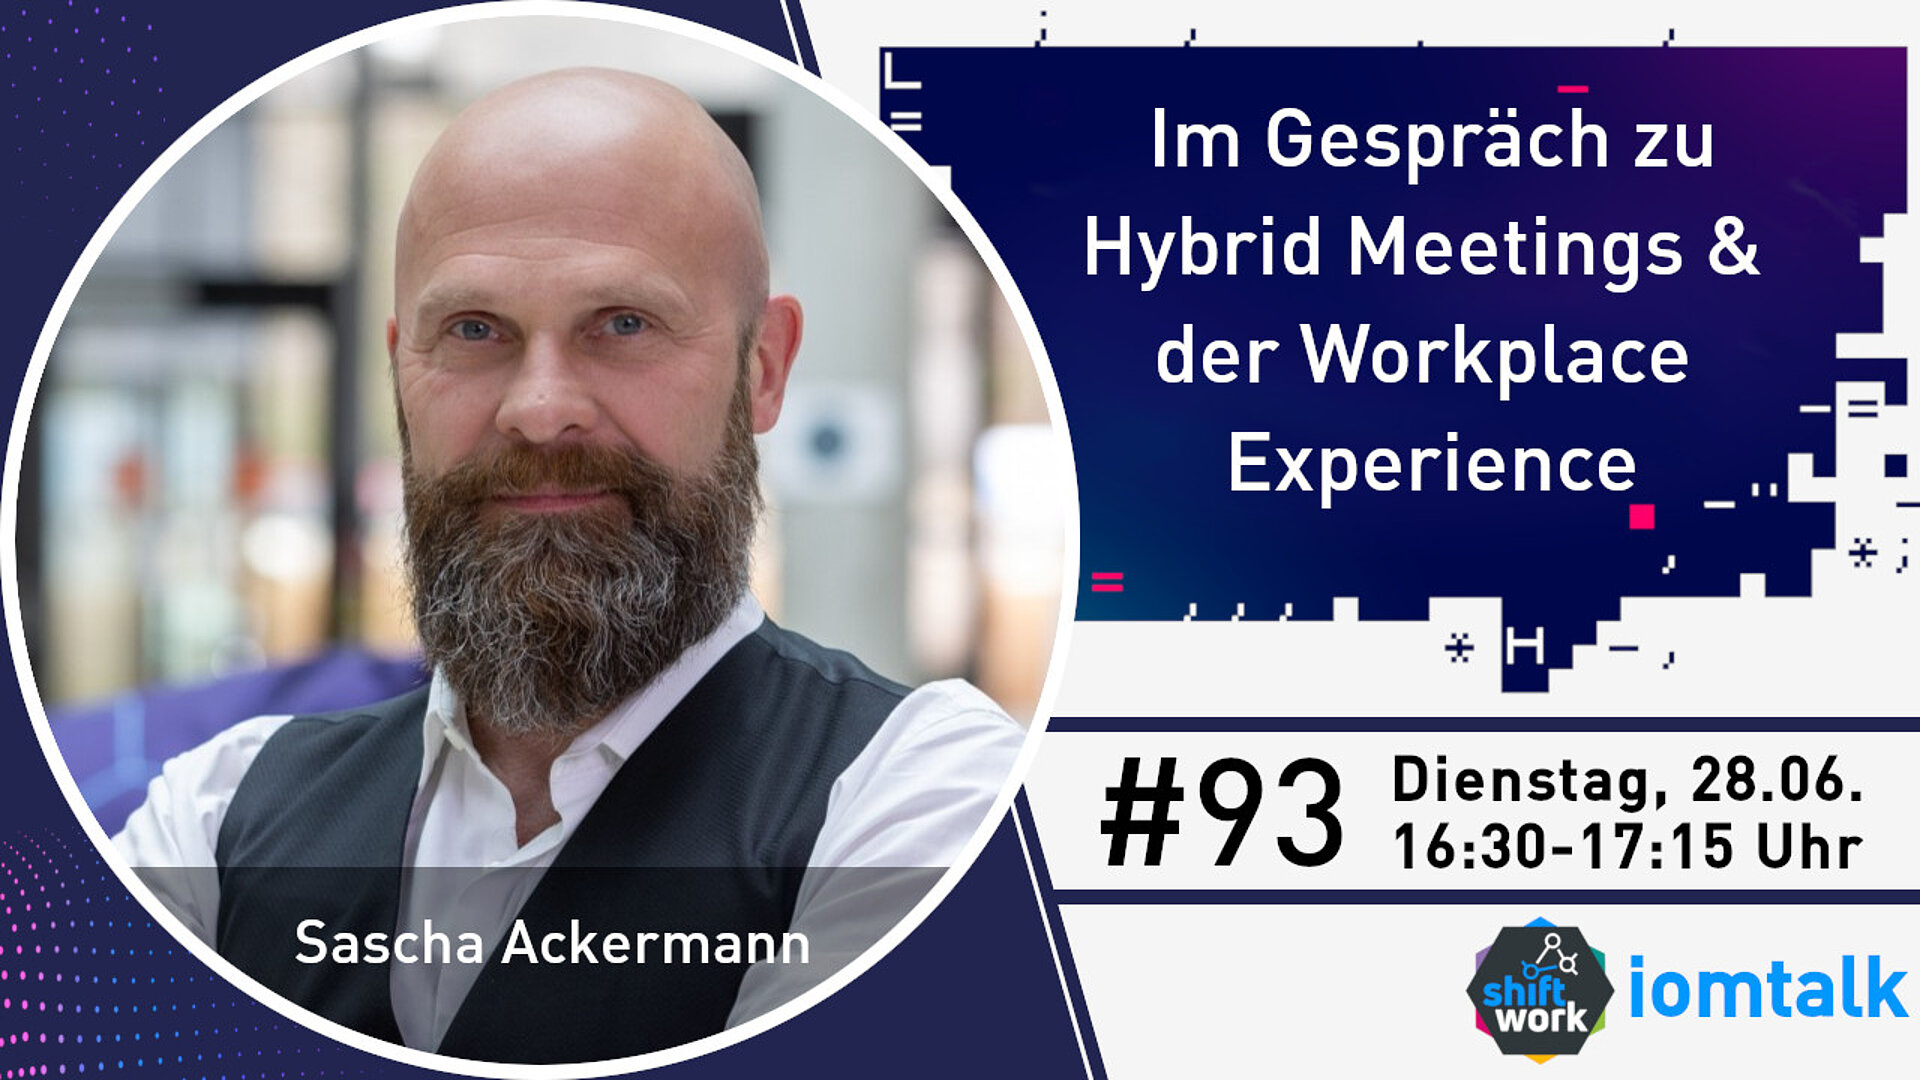 Im Gespräch mit Sascha Ackermann zu Hybrid Meetings & die Workplace Experience